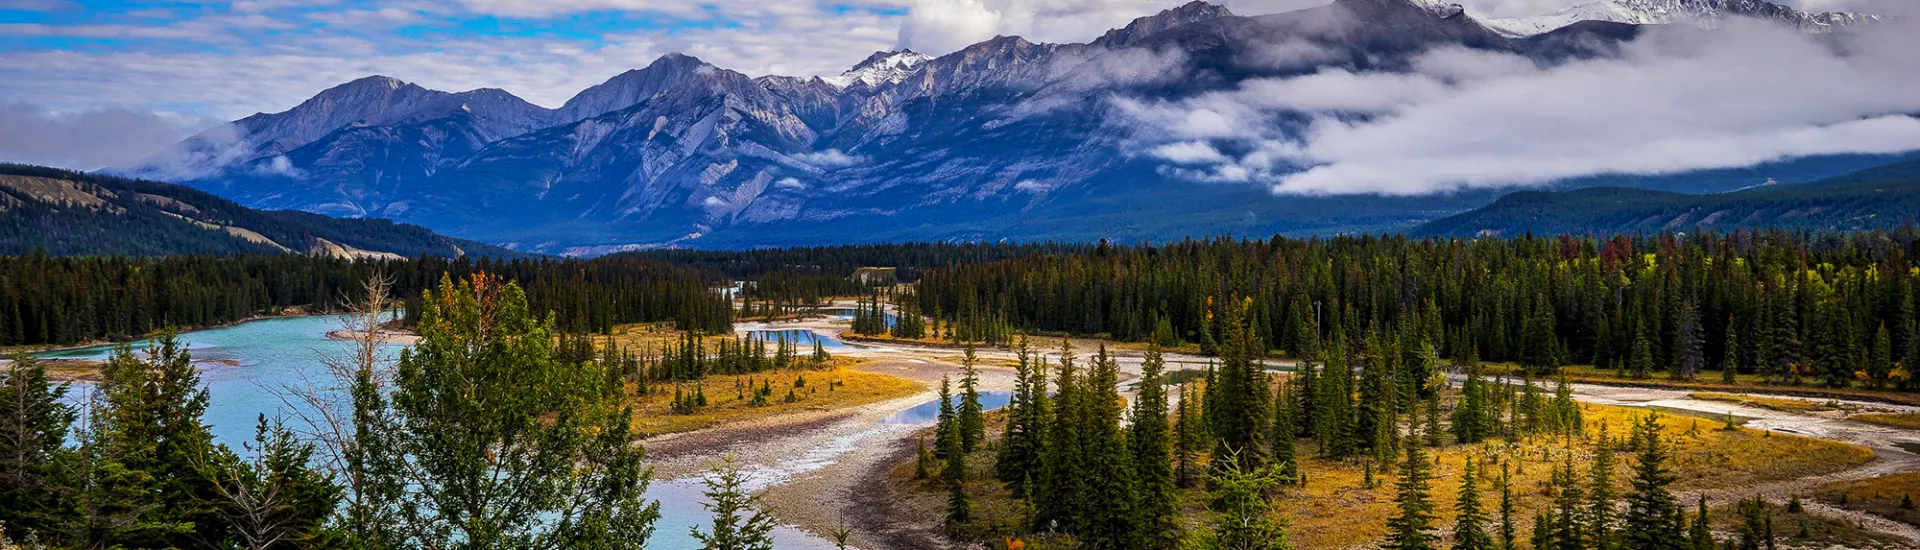 Jasper-Nationalpark in Kanada